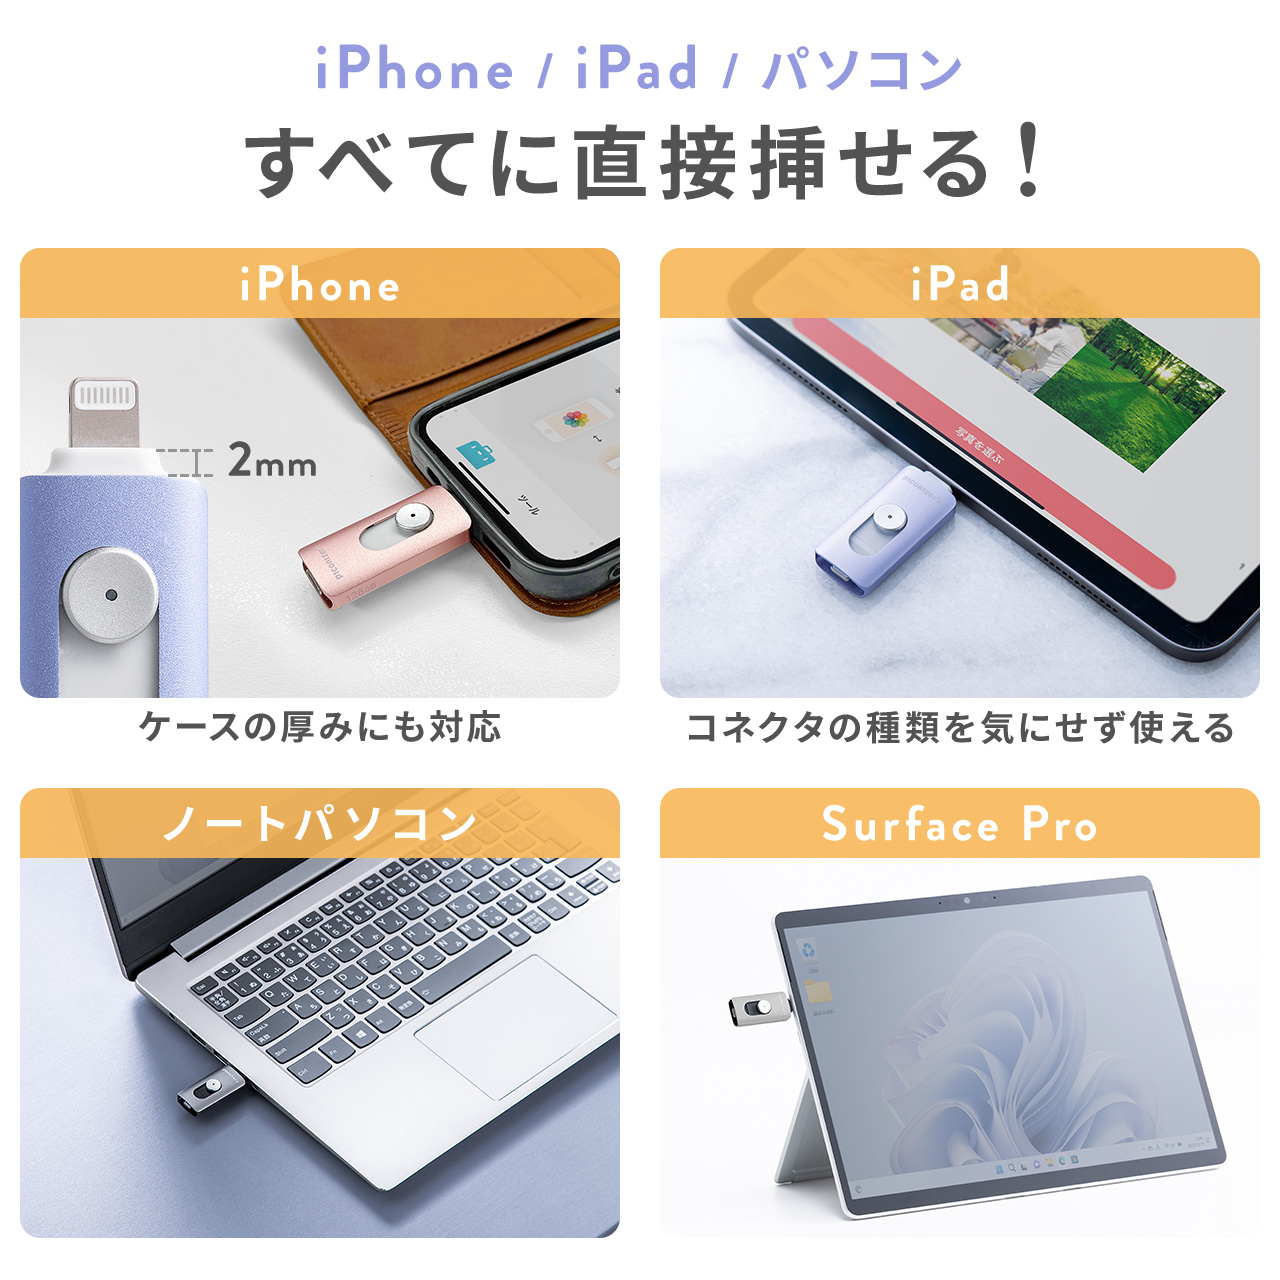 Piconizer4 ピコナイザー4 Lightning/Type-C 両対応 USBメモリ 1TB iPhone Android 対応 MFi認証 バックアップ iPad USB 10Gbps 専用ポーチ付 600-IPLUC1T｜sanwadirect｜07